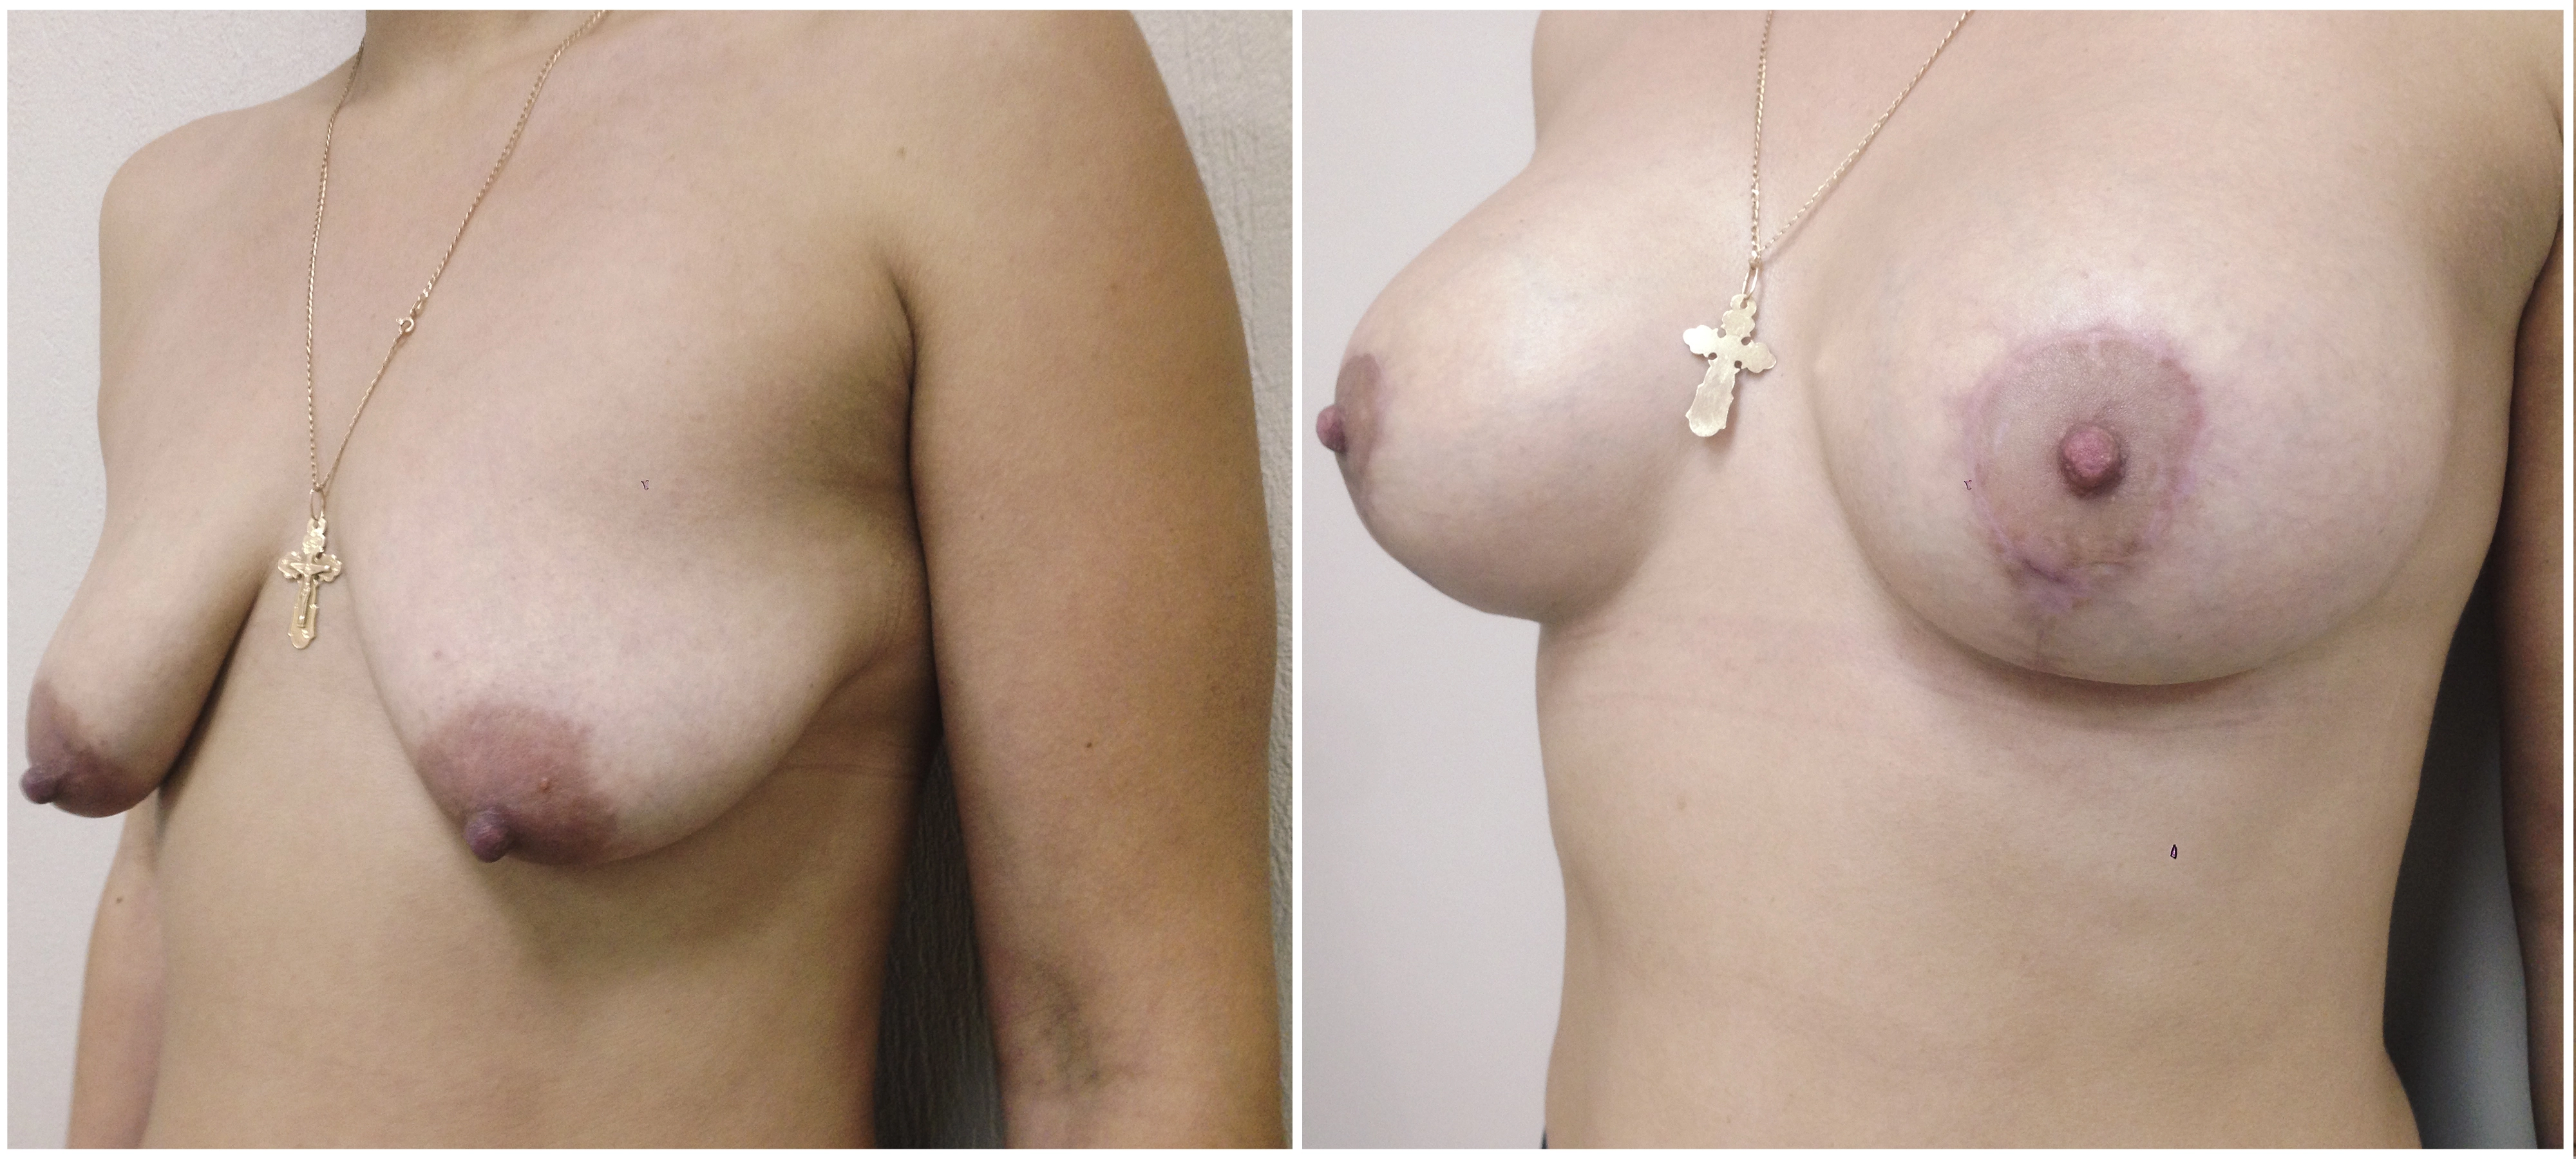 Трансаксиллярное увеличение груди имплантами. 7 месяцев после операции. Хирург:  Мазур Андрей Евгеньевич